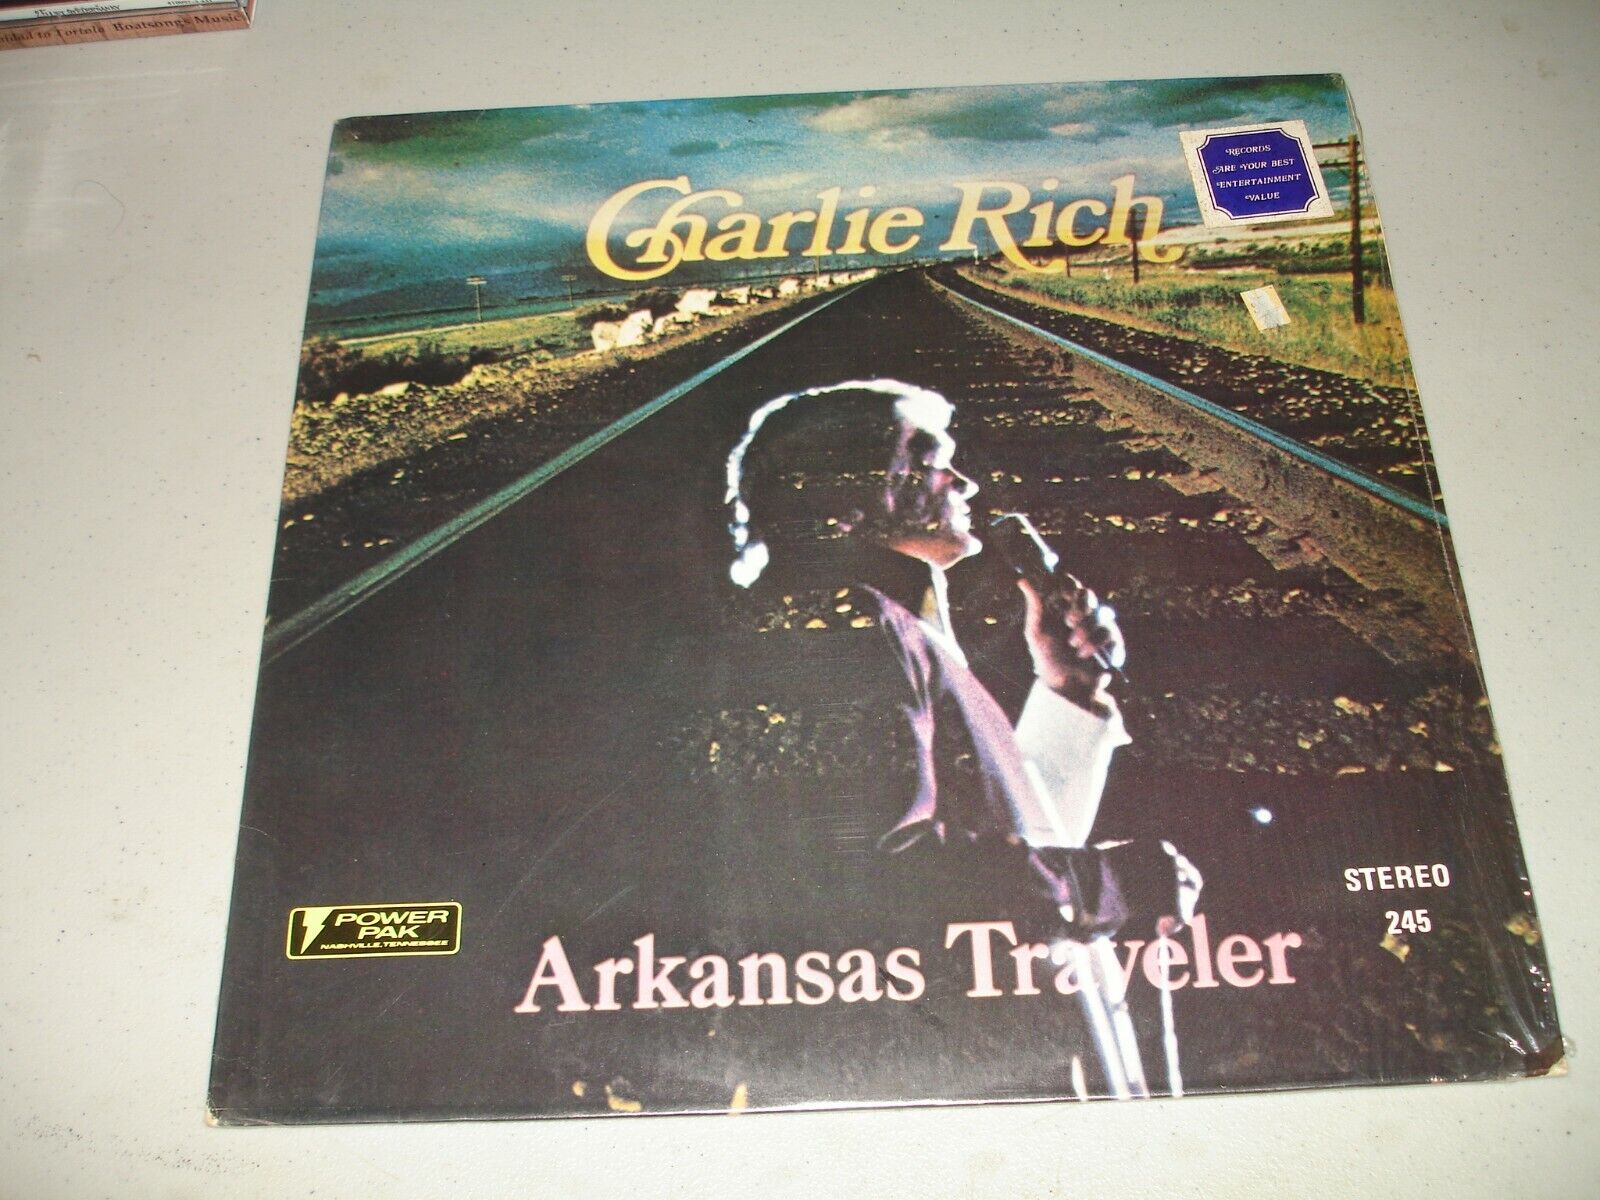 Charlie Rich - Arkansas Traveler (LP, 1974) Brand New, Sealed, 1st